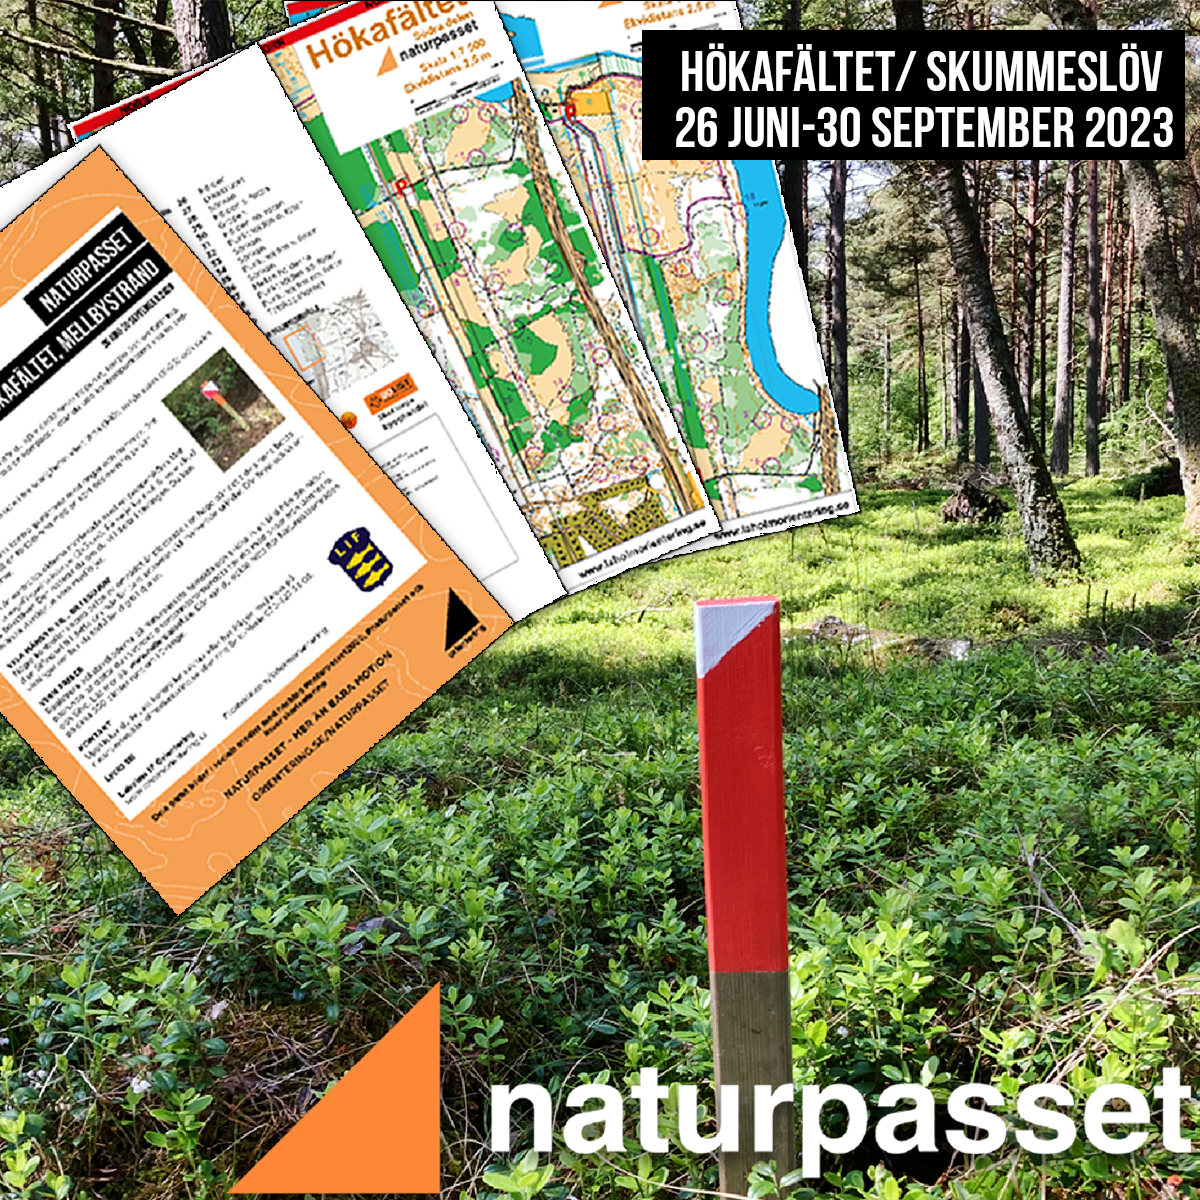 image: Här hittar du Naturpasset i Mellbystrand och Skummeslöv